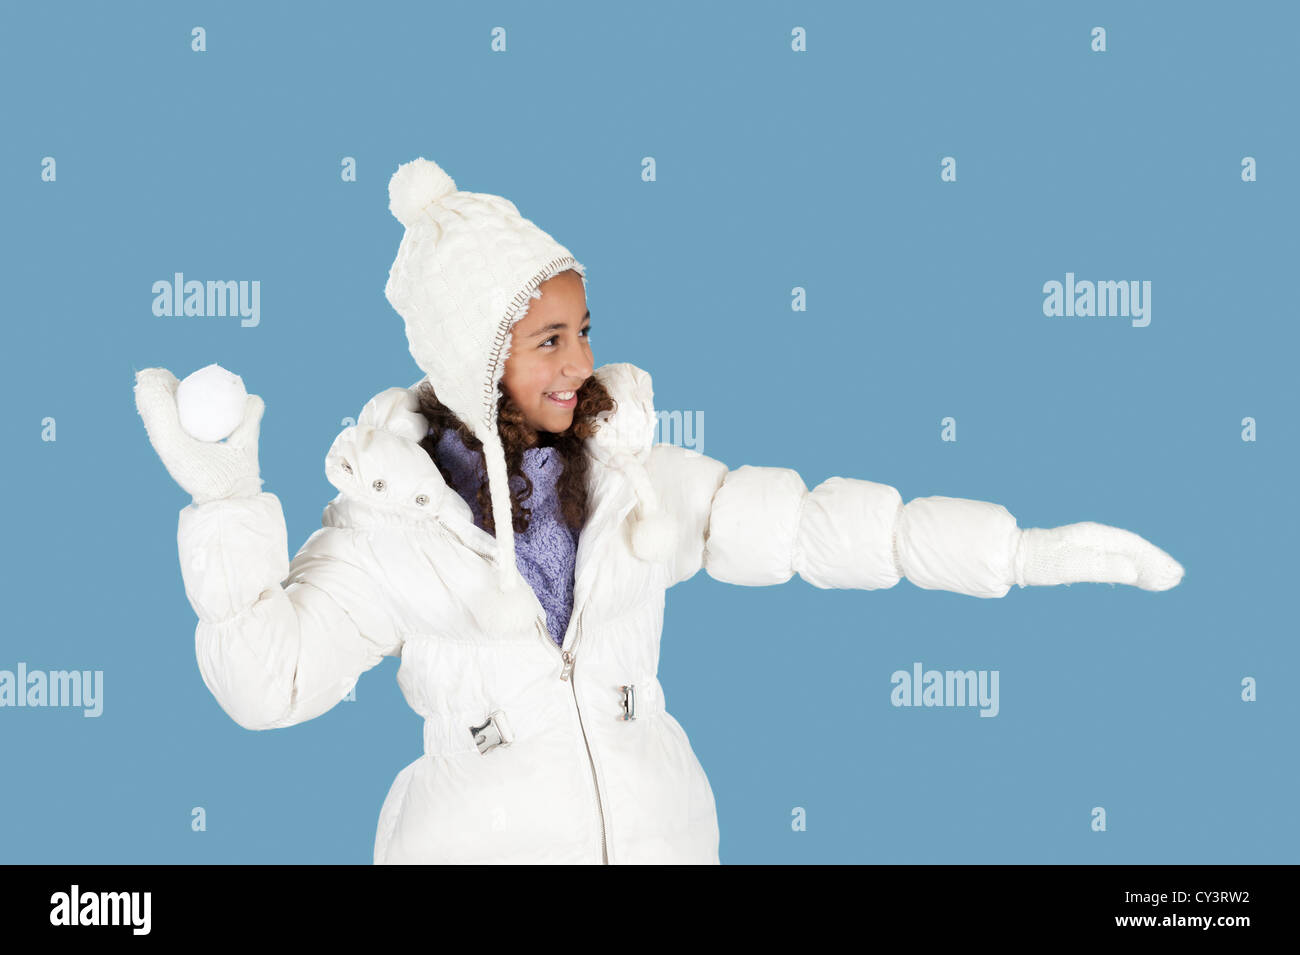 winter fun, girl throwing a snow ball Stock Photo